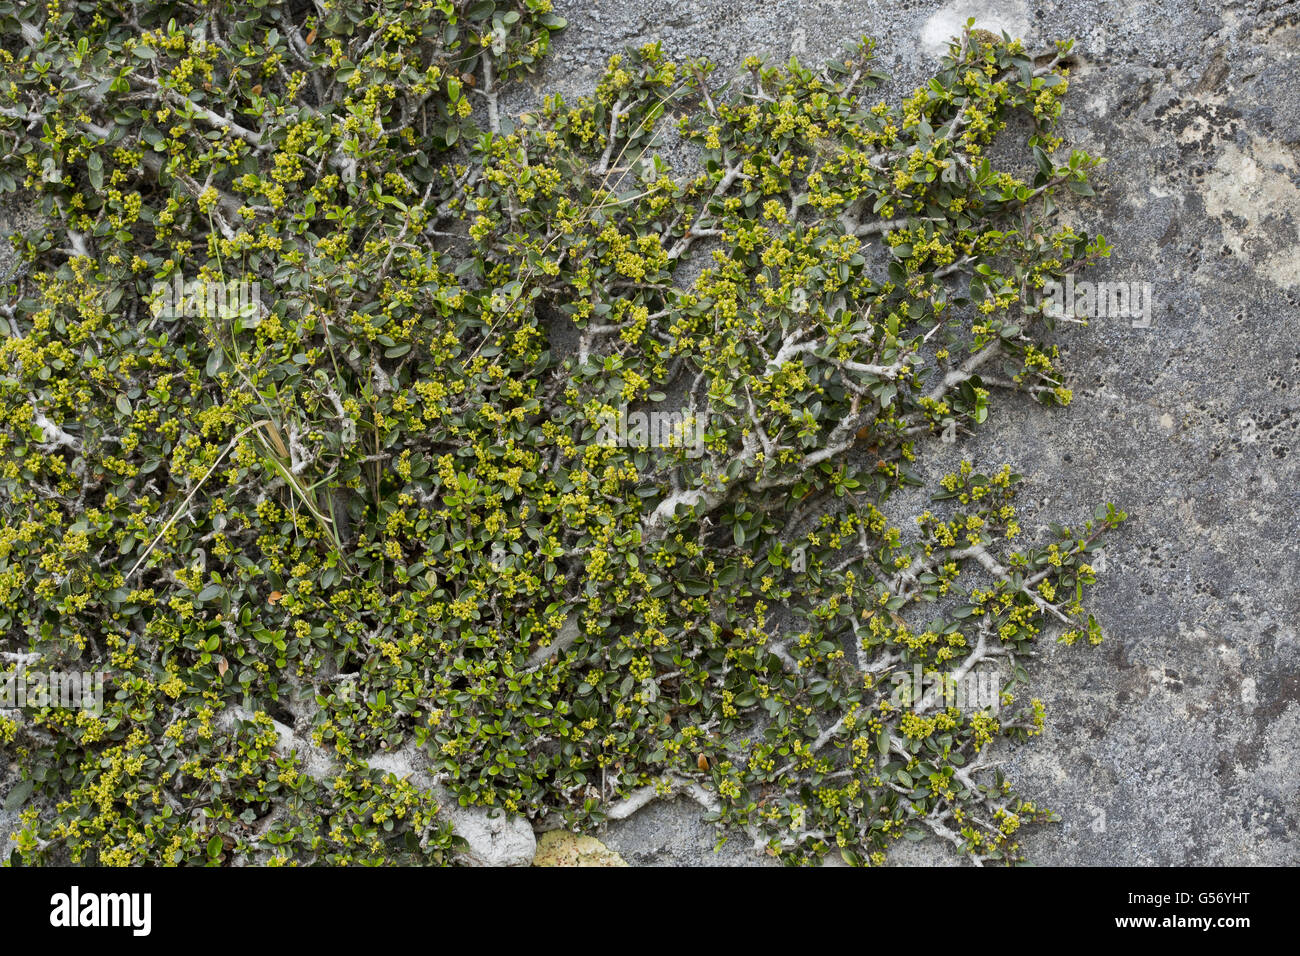 Mediterraneo (Frangola Rhamnus alaternus myrtifolius) fioritura, crescente prostrato sulla scogliera, Sierra de las Nieves, provincia di Malaga, Andalusia, Spagna, Aprile Foto Stock